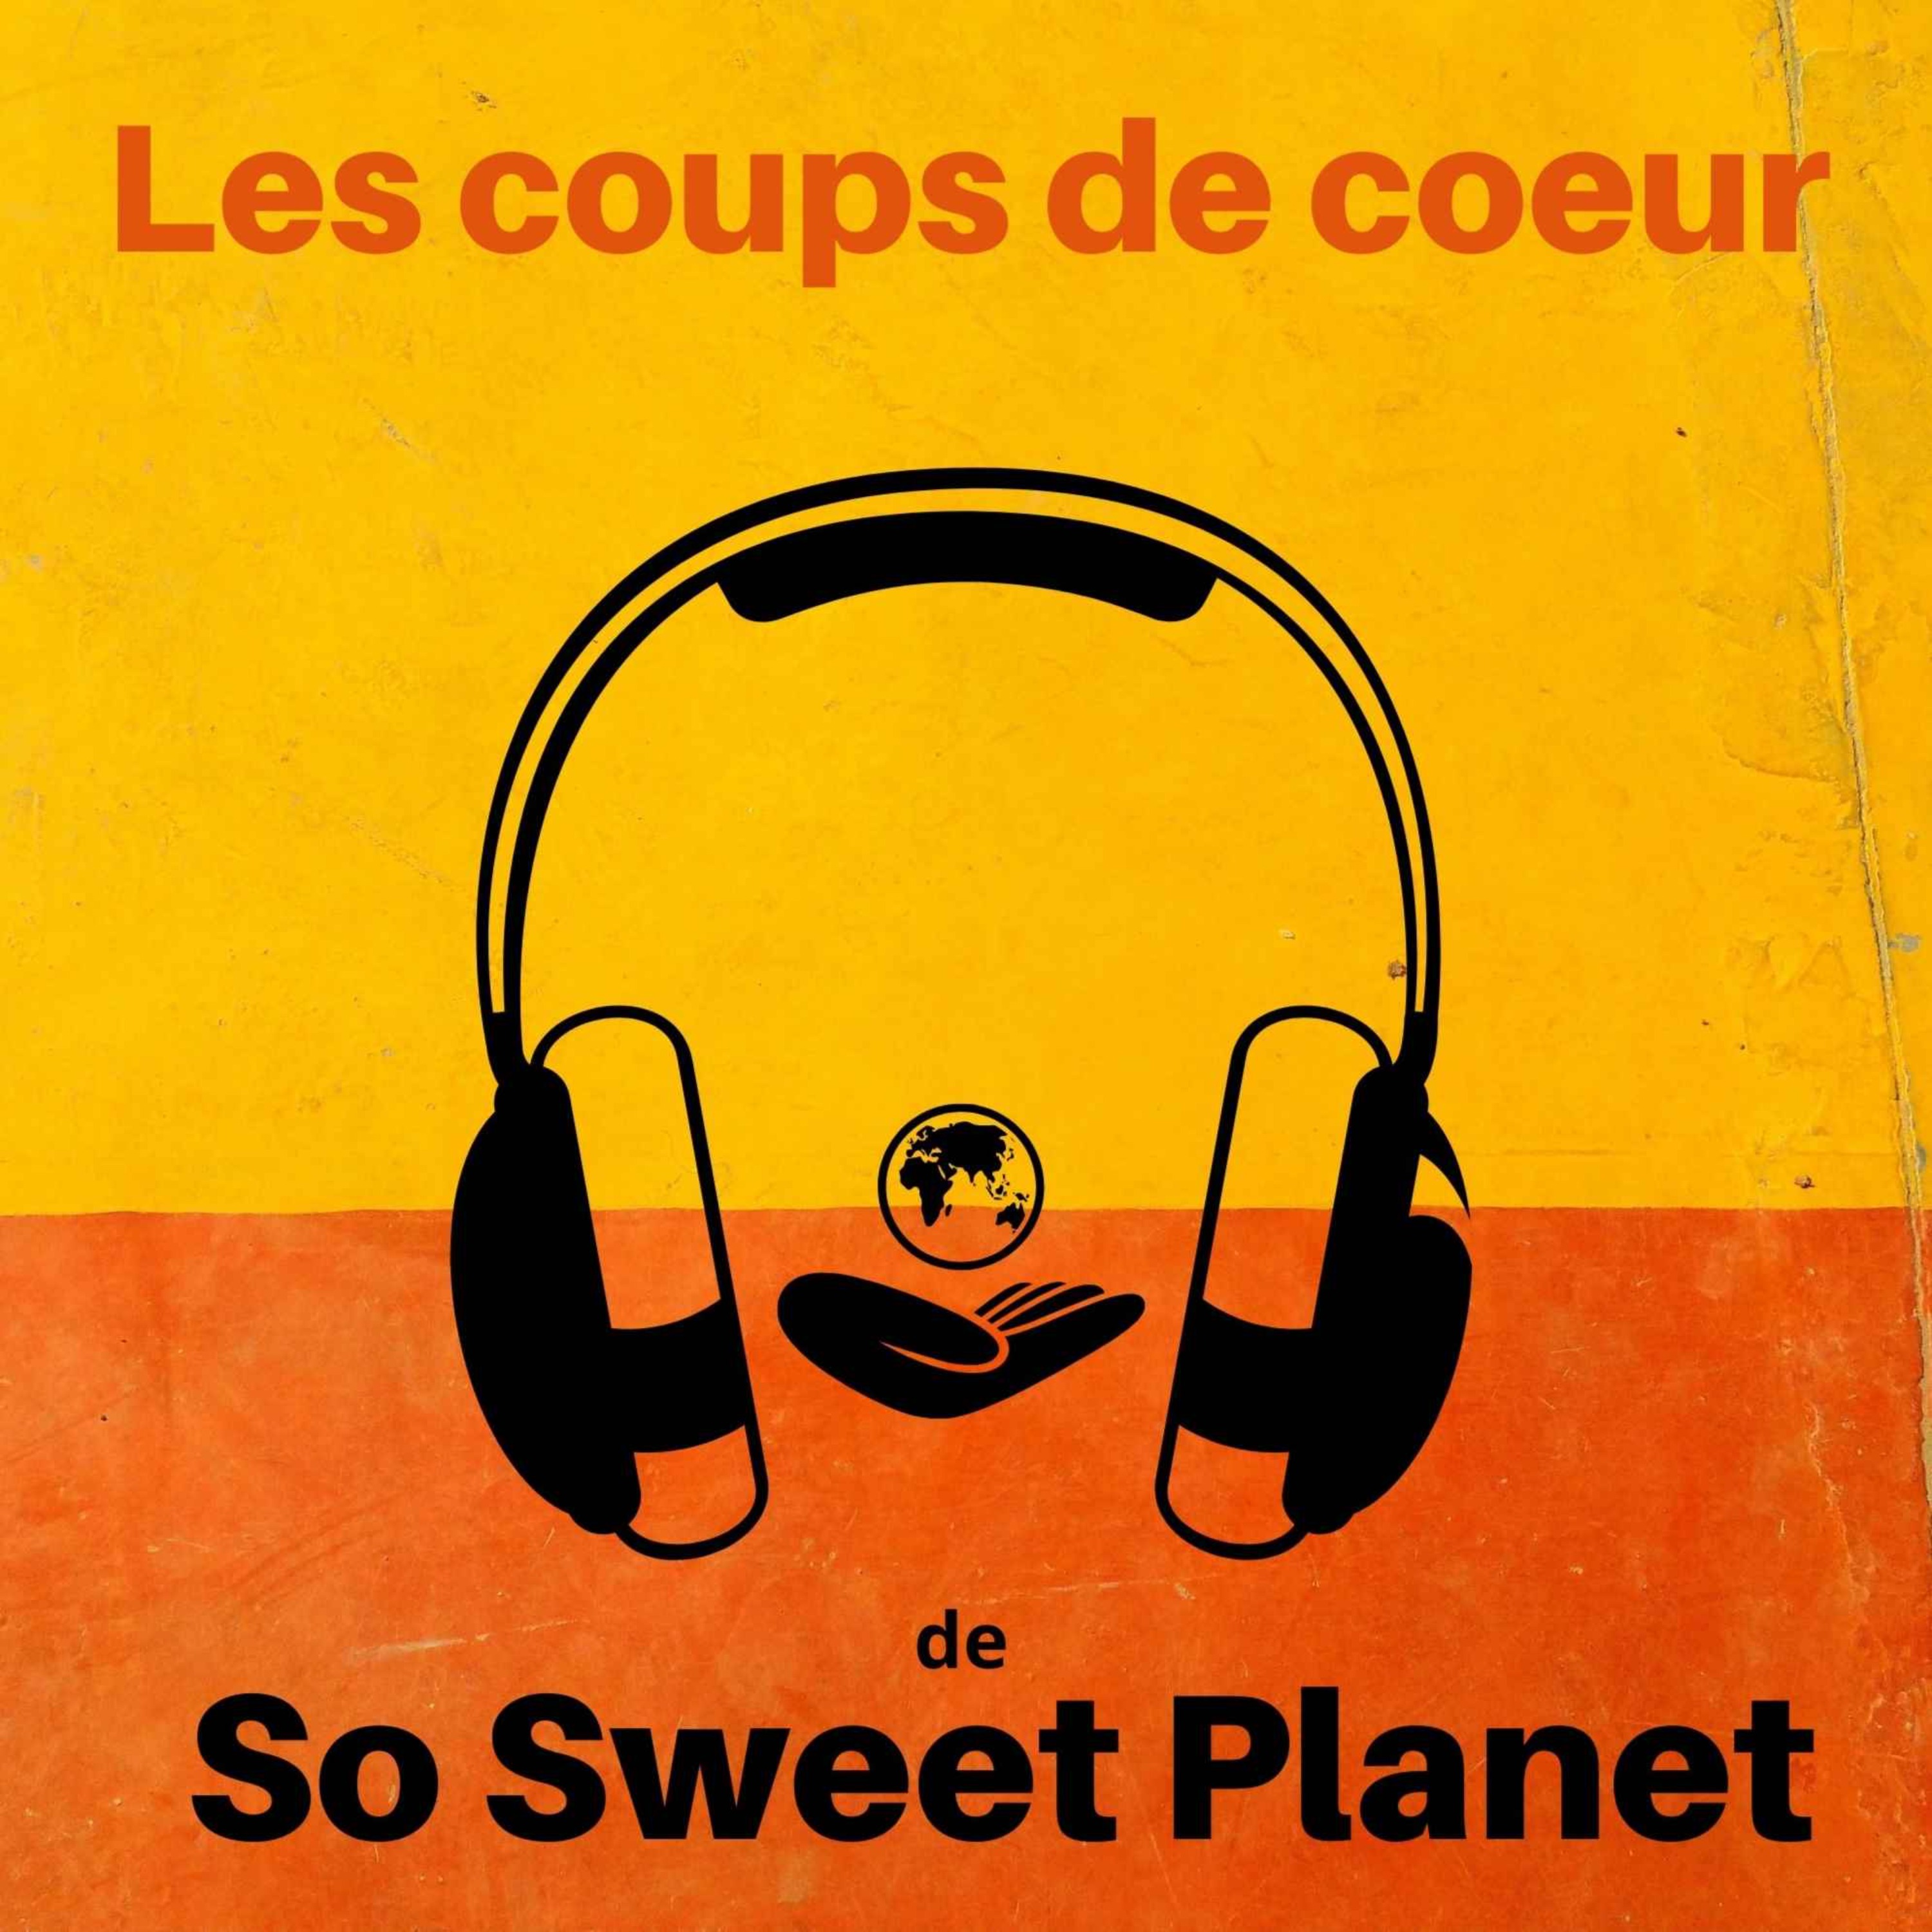 Les Coups de coeur de So Sweet Planet n°2. Livres, films, musique, événements, actu des ONG, documentaires, séries...